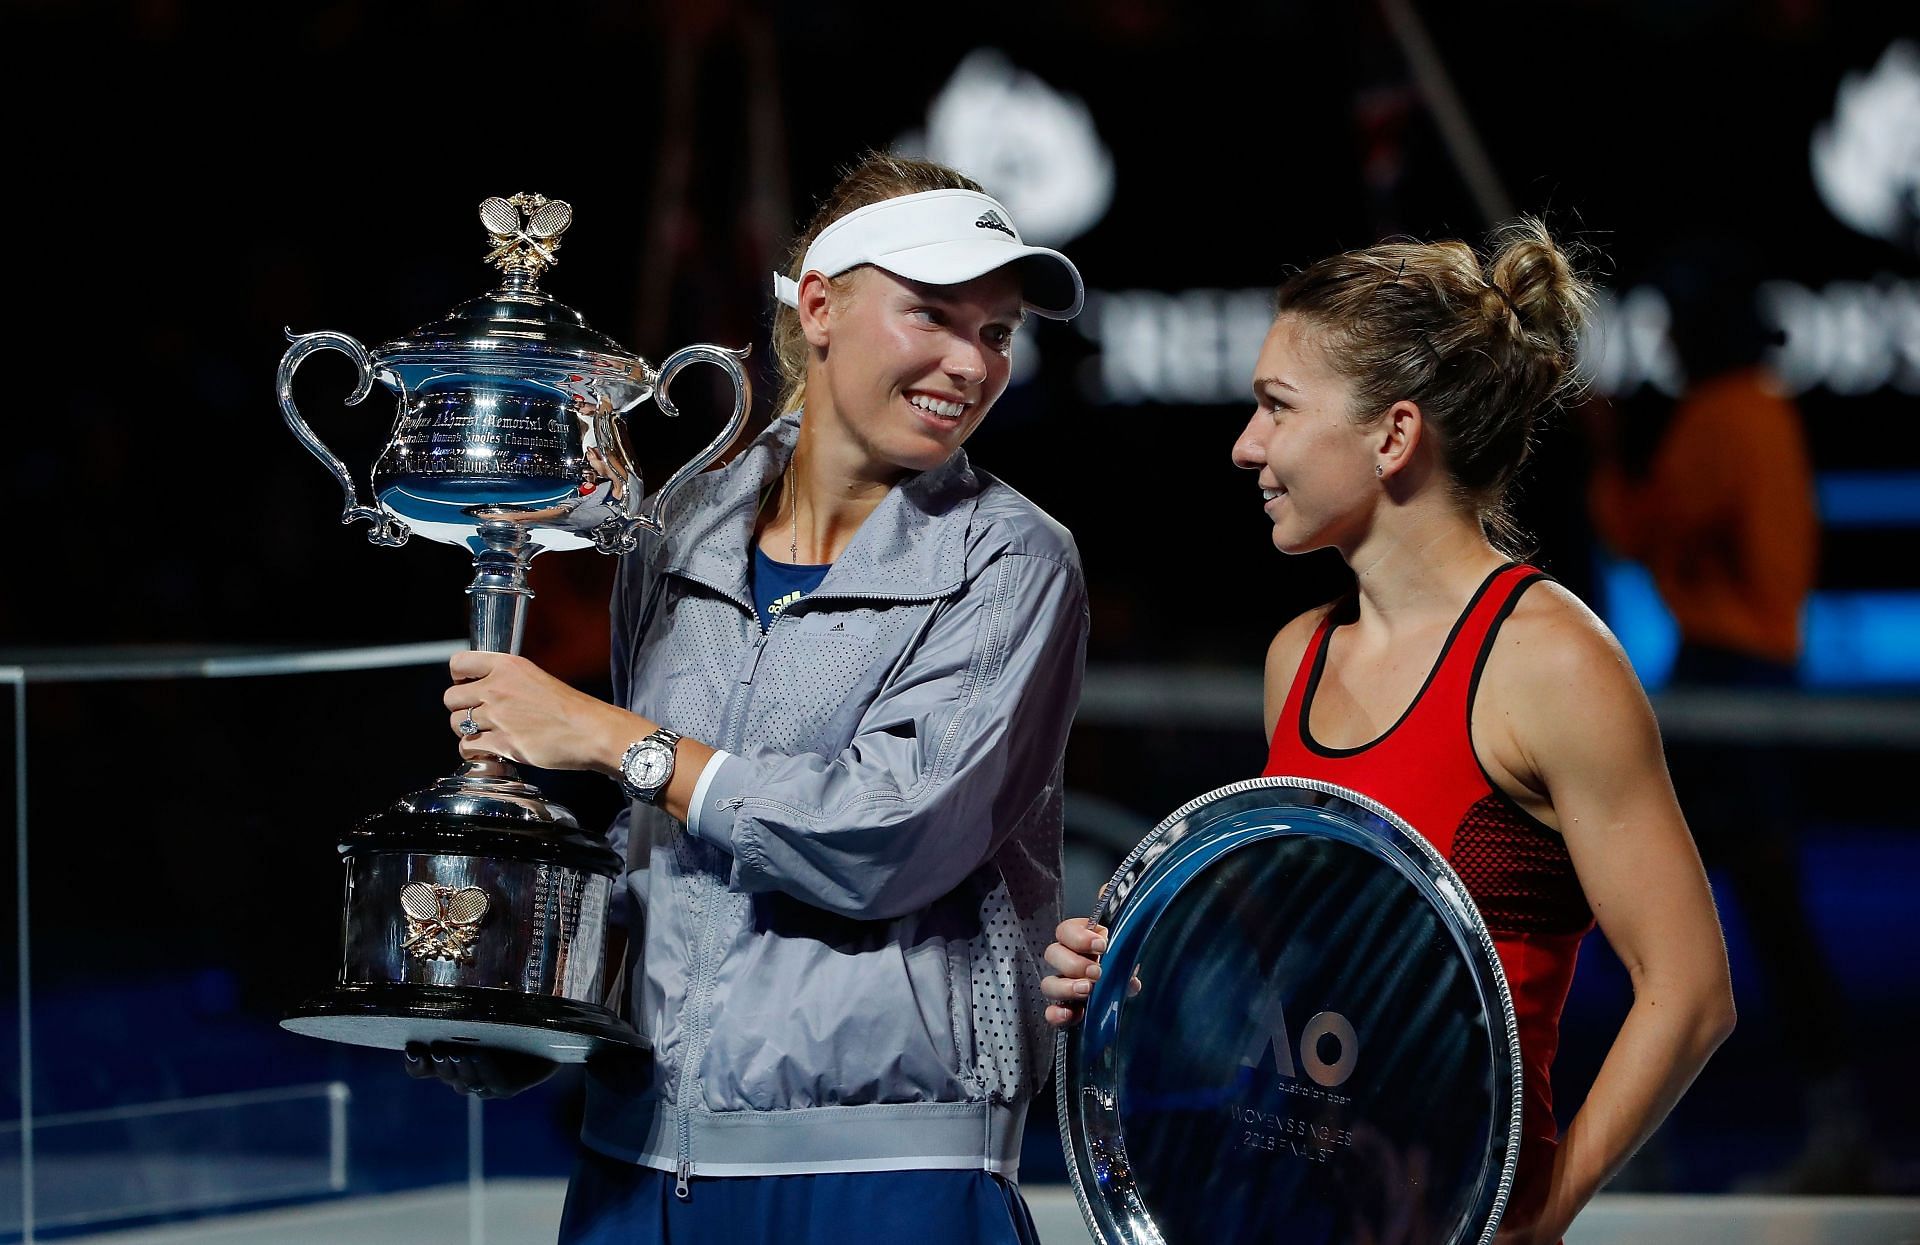 Simona Halep lost to Caroline Wozniacki in the 2018 Australian Open final